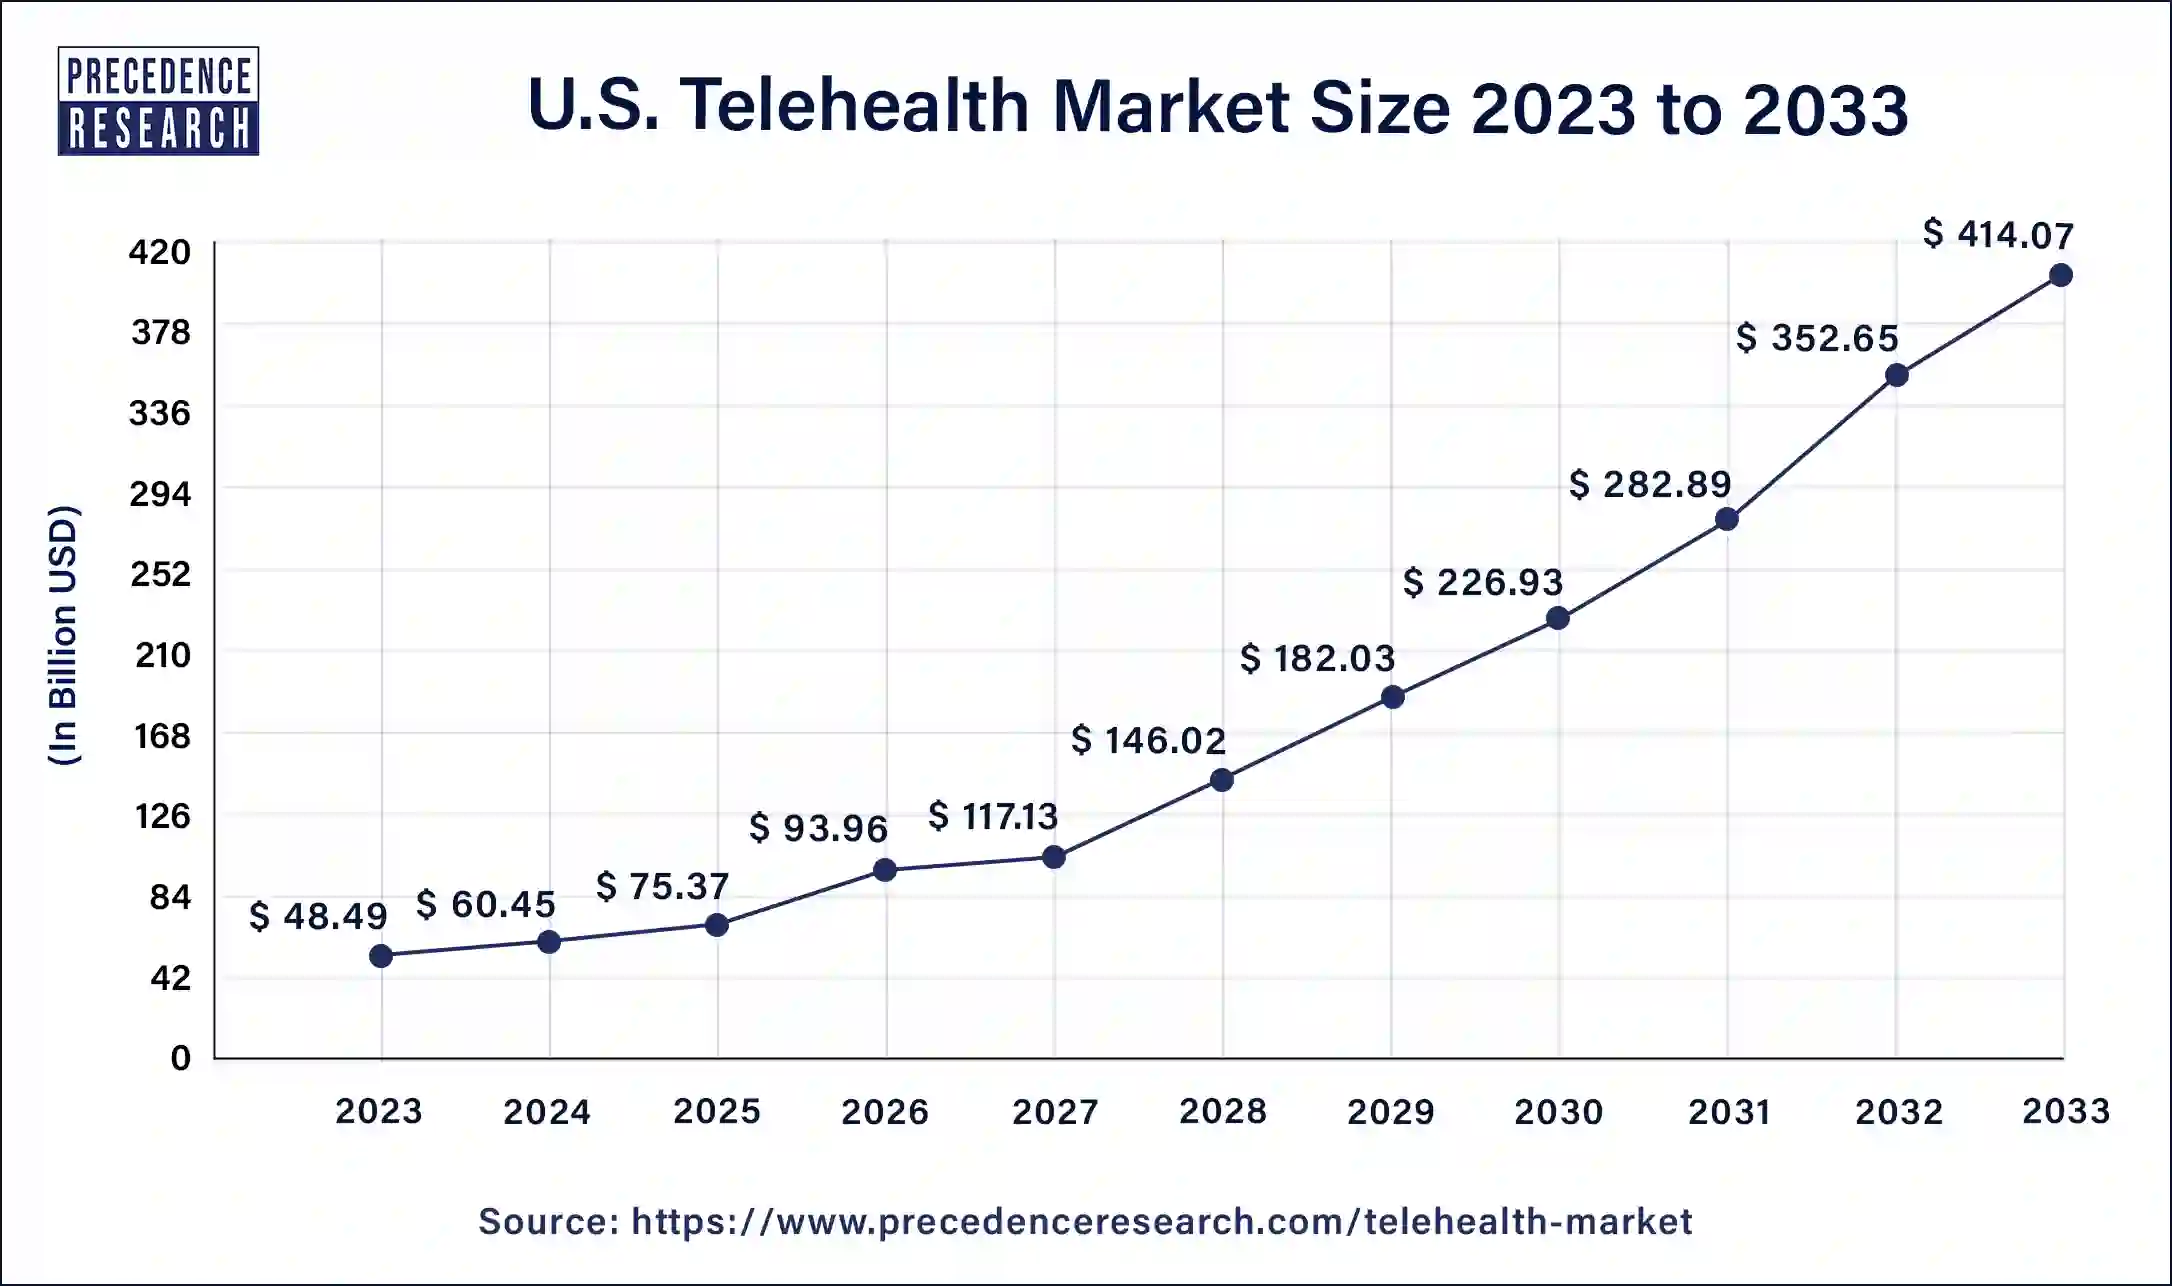 U.S. Telehealth Market Size 2024 to 2033